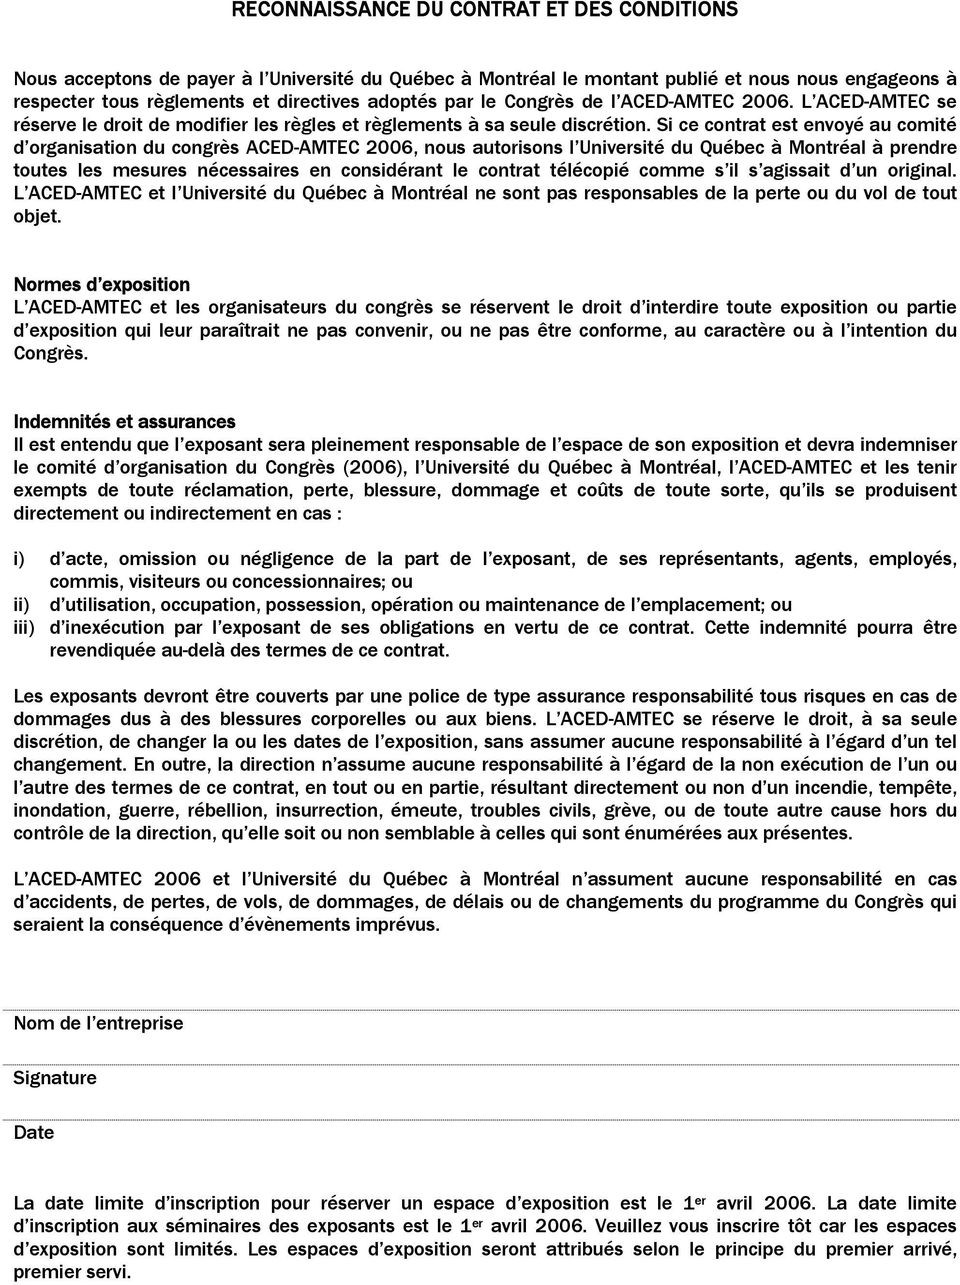 Si ce contrat est envoyé au comité d organisation du congrès ACED-AMTEC 2006, nous autorisons l Université du Québec à Montréal à prendre toutes les mesures nécessaires en considérant le contrat